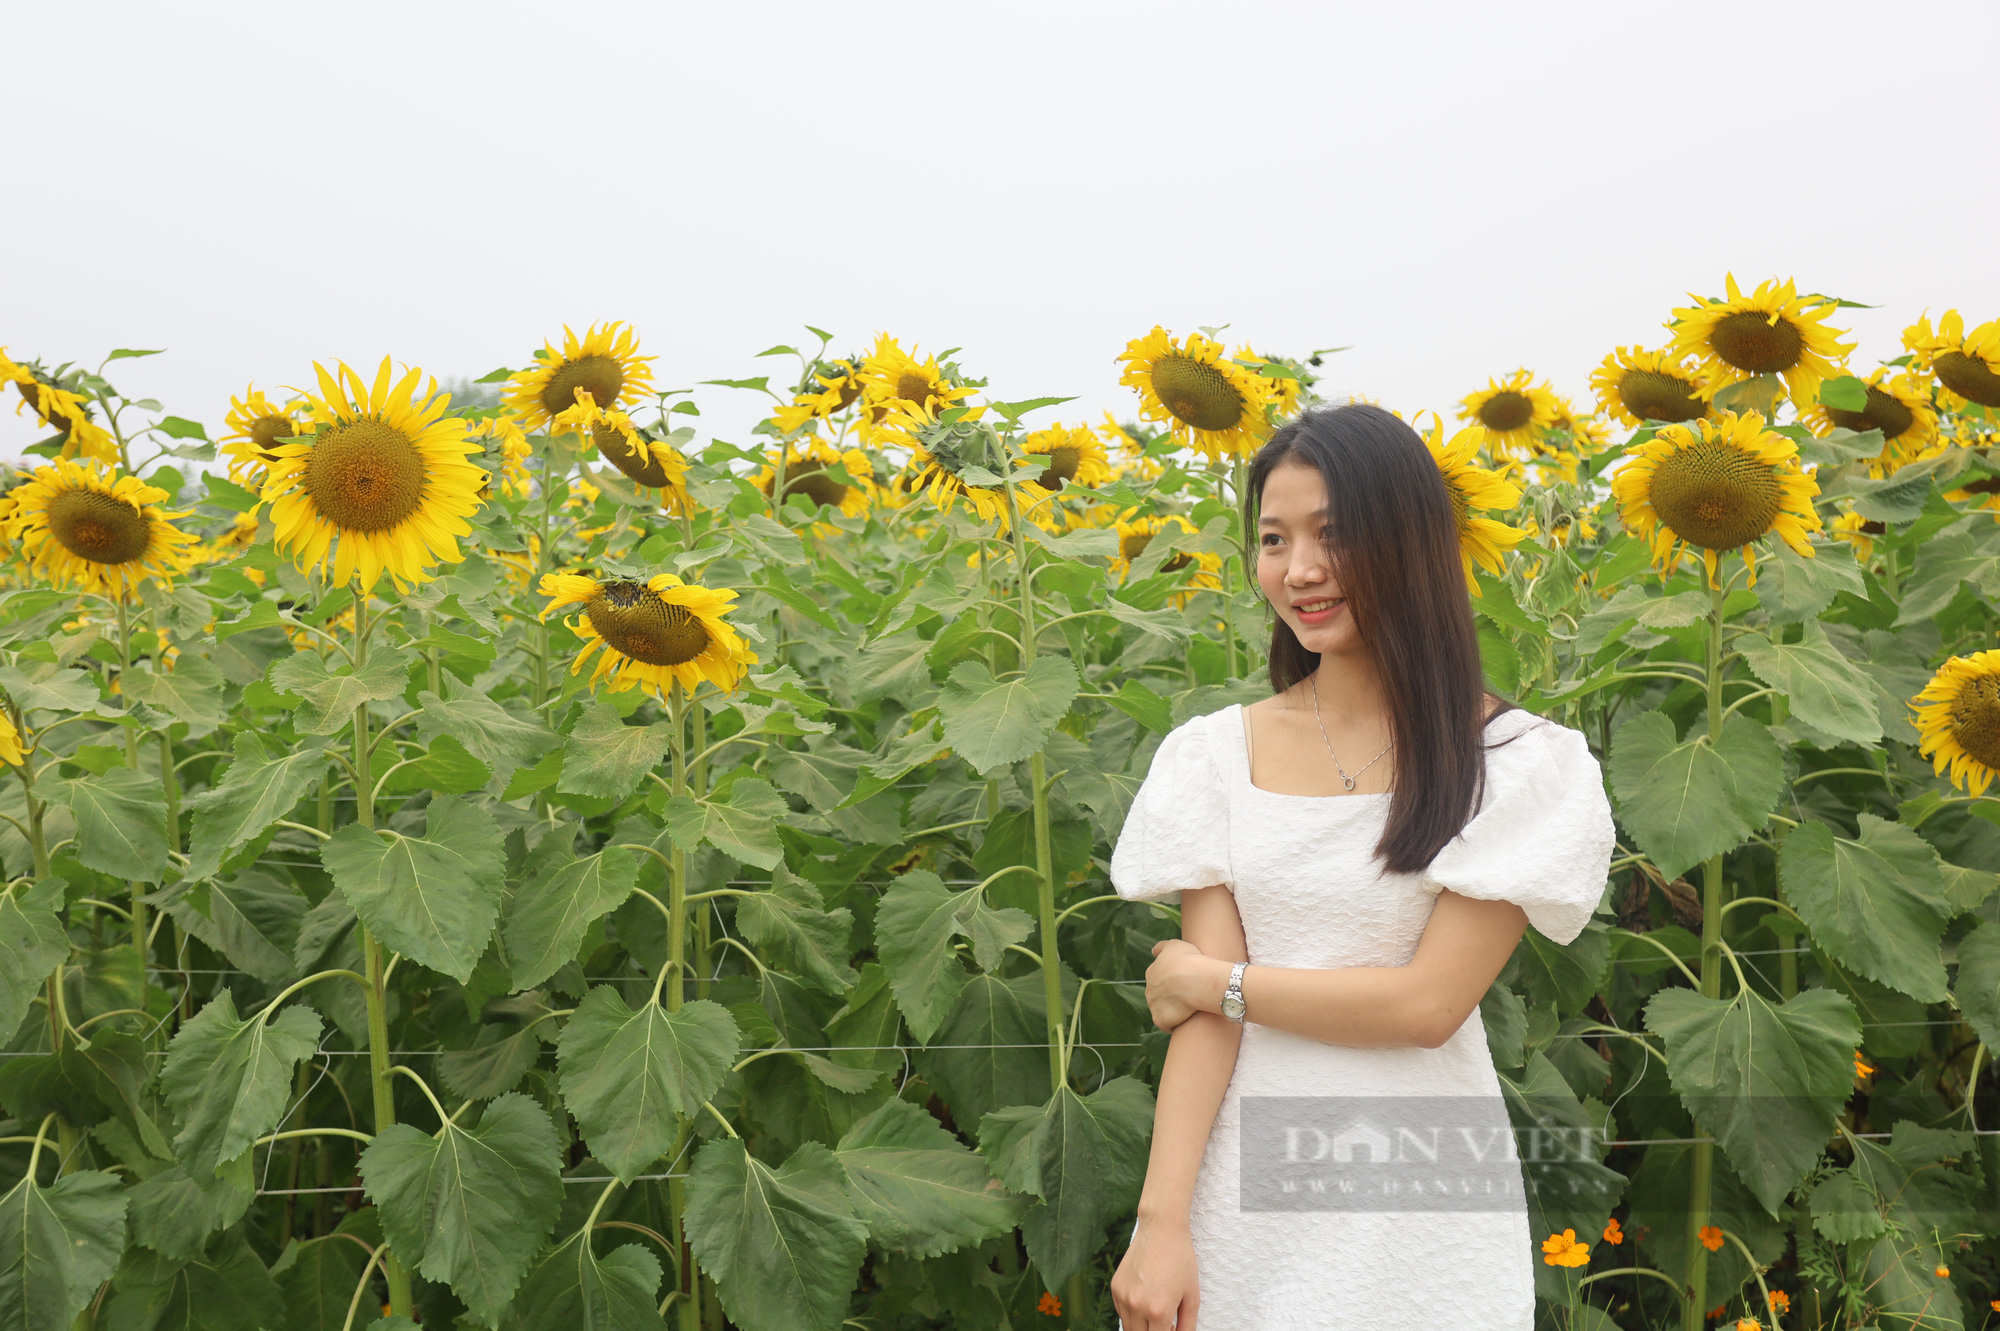 Mê mẩn trước cánh đồng hoa hướng dương nở rực sắc vàng "hút" giới trẻ ở Hà Nội - Ảnh 5.